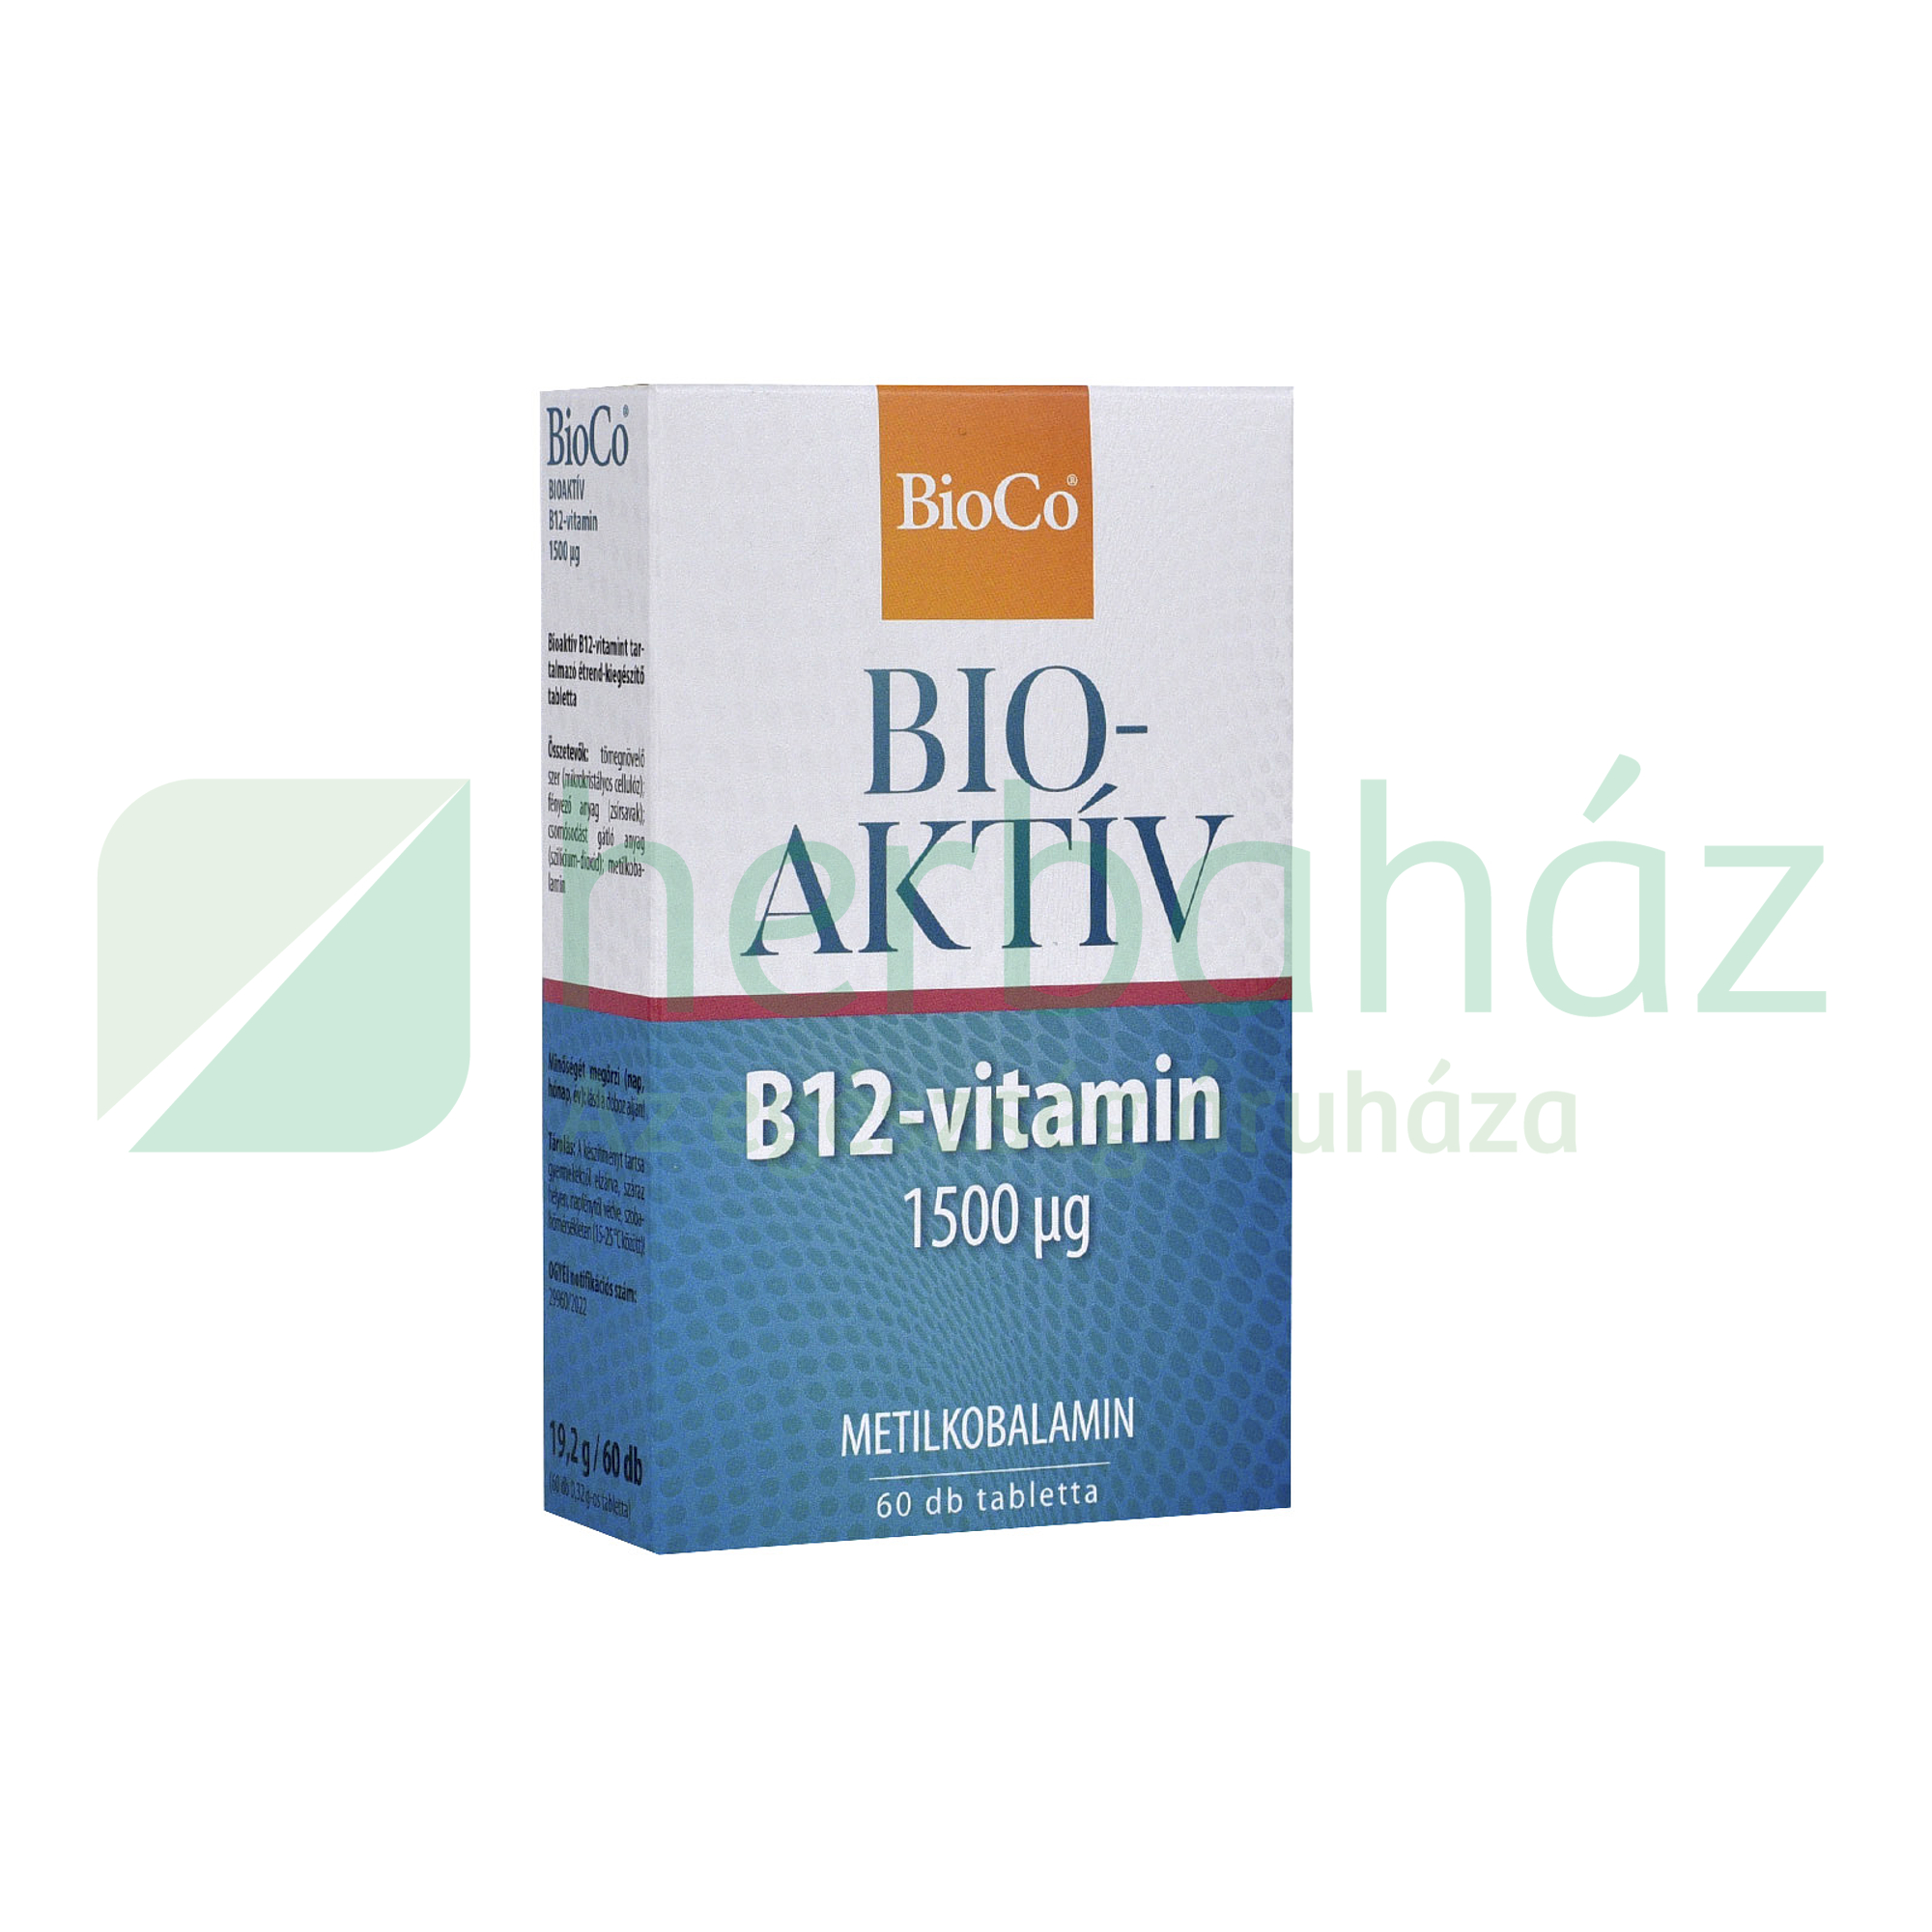 BIOCO B12-VITAMIN 1500 MMG 60DB